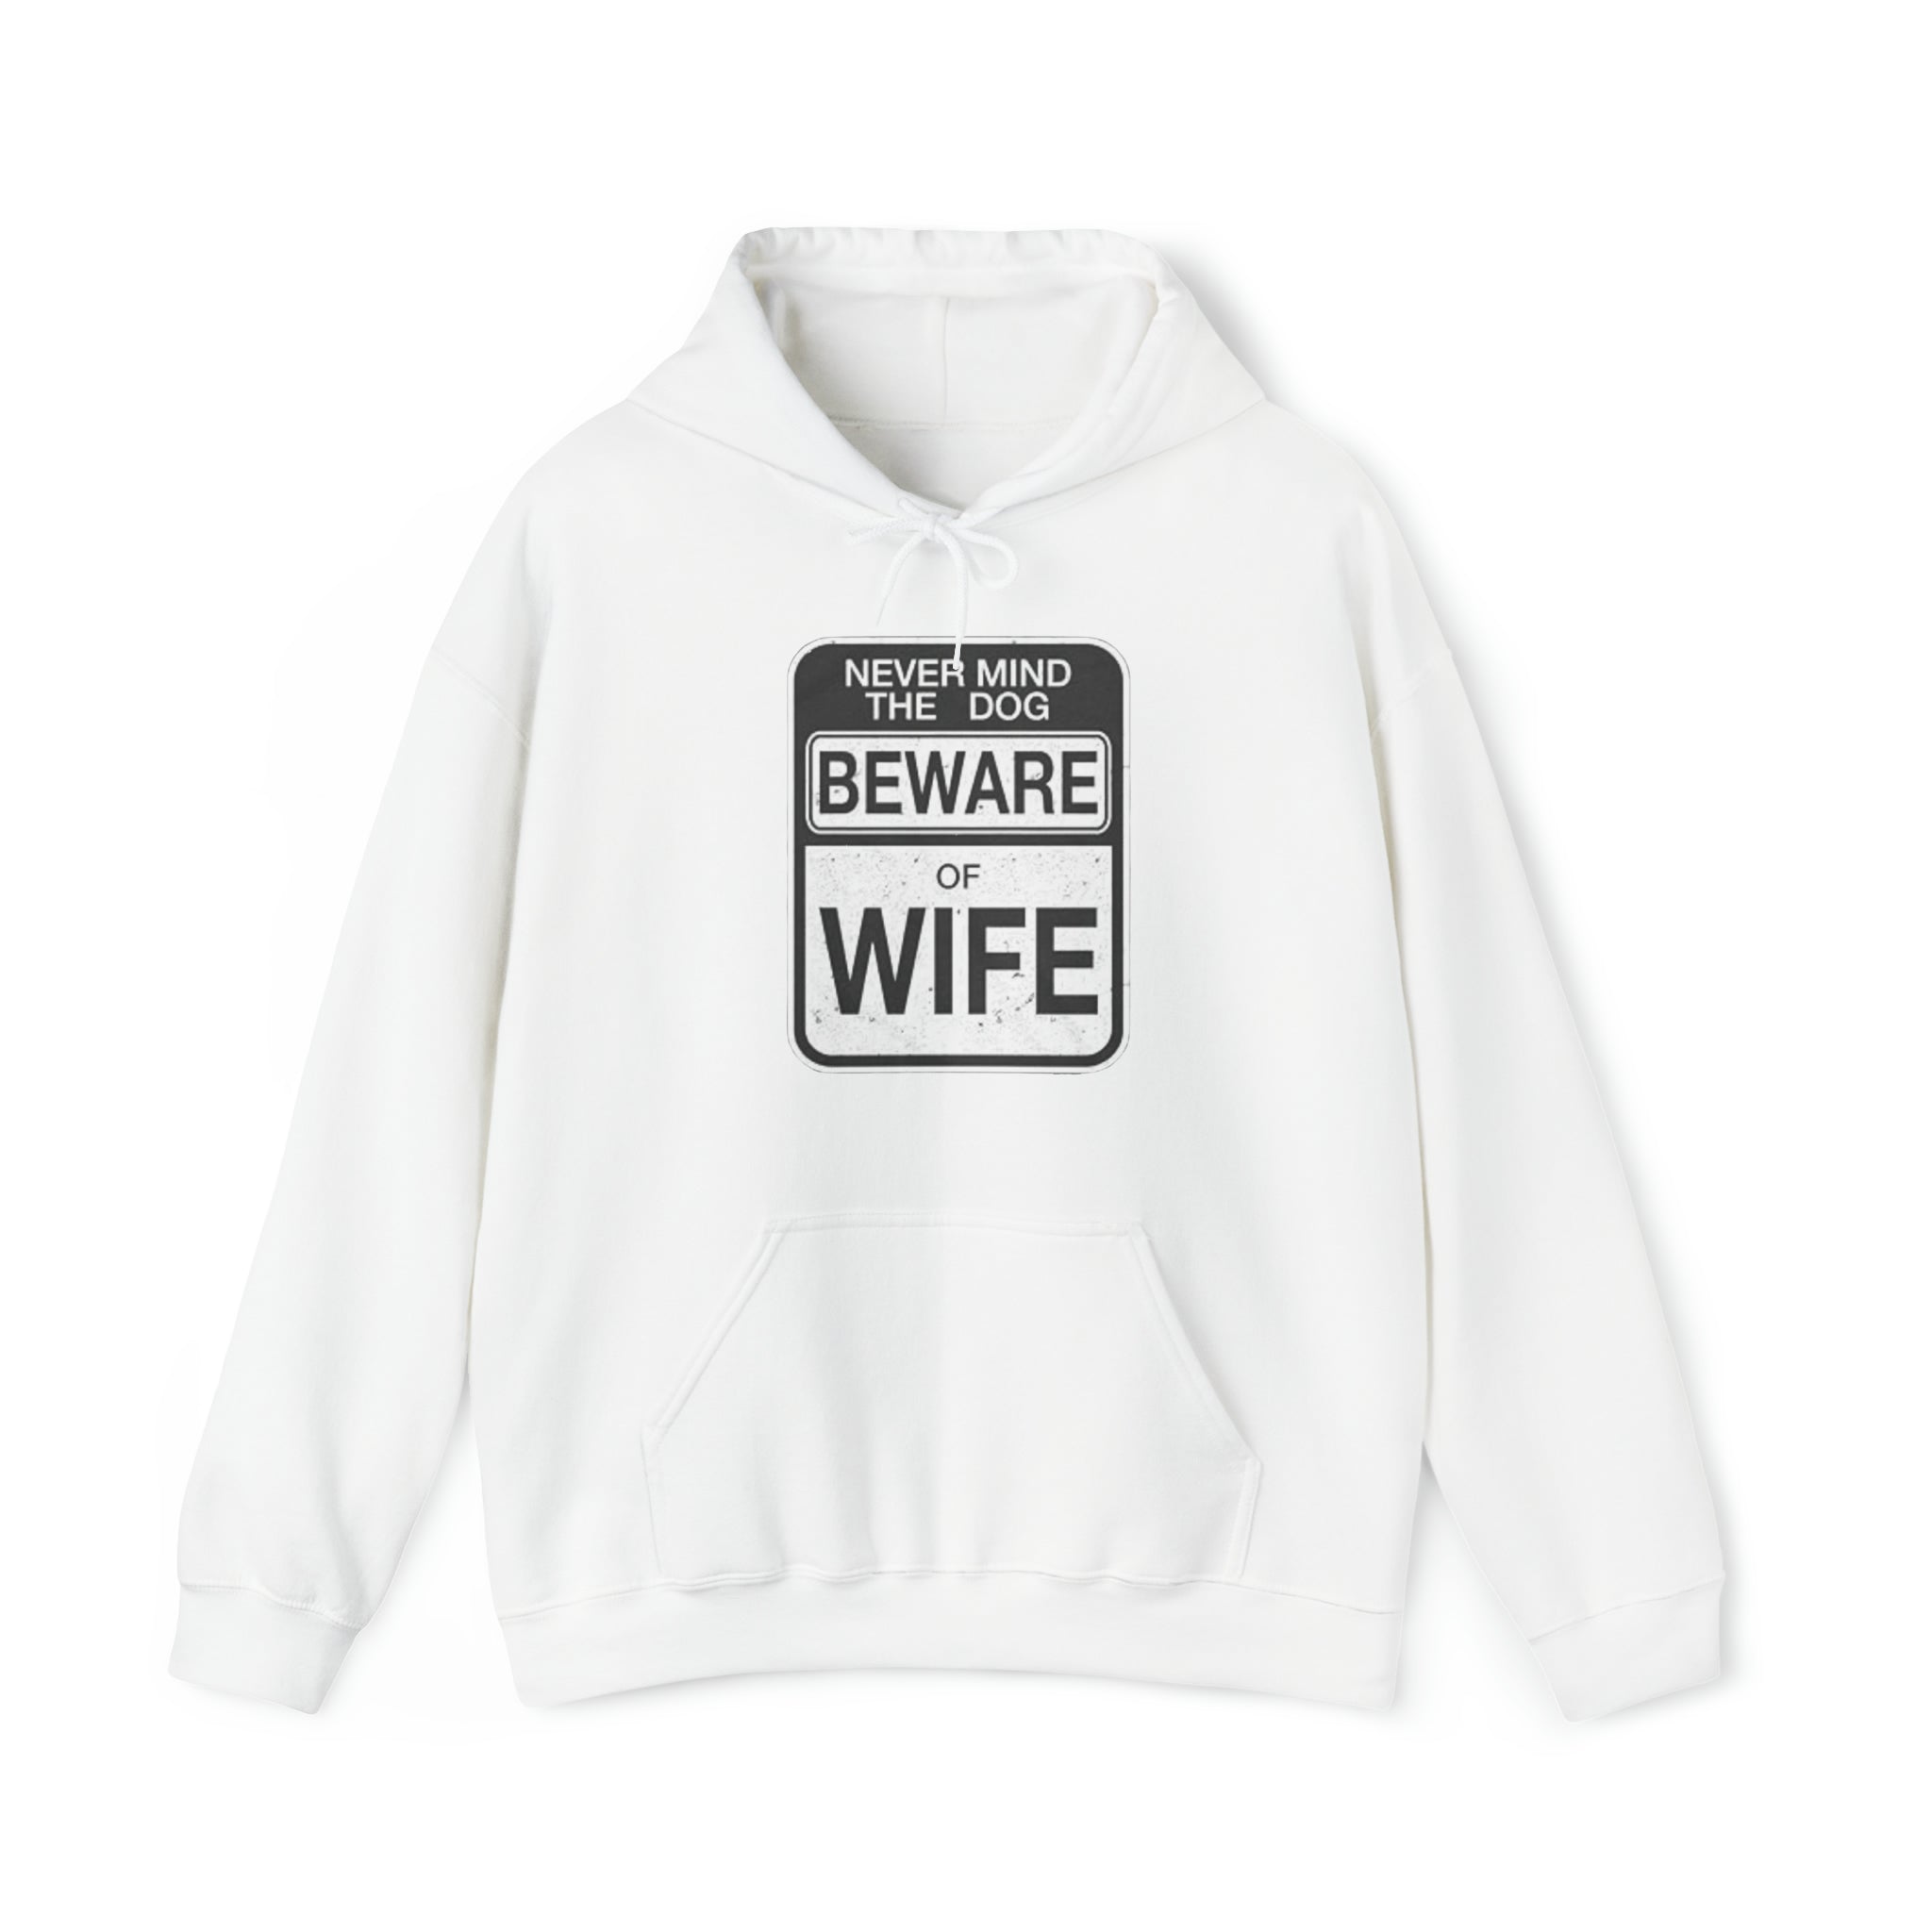 Beware of Wife Hoodie